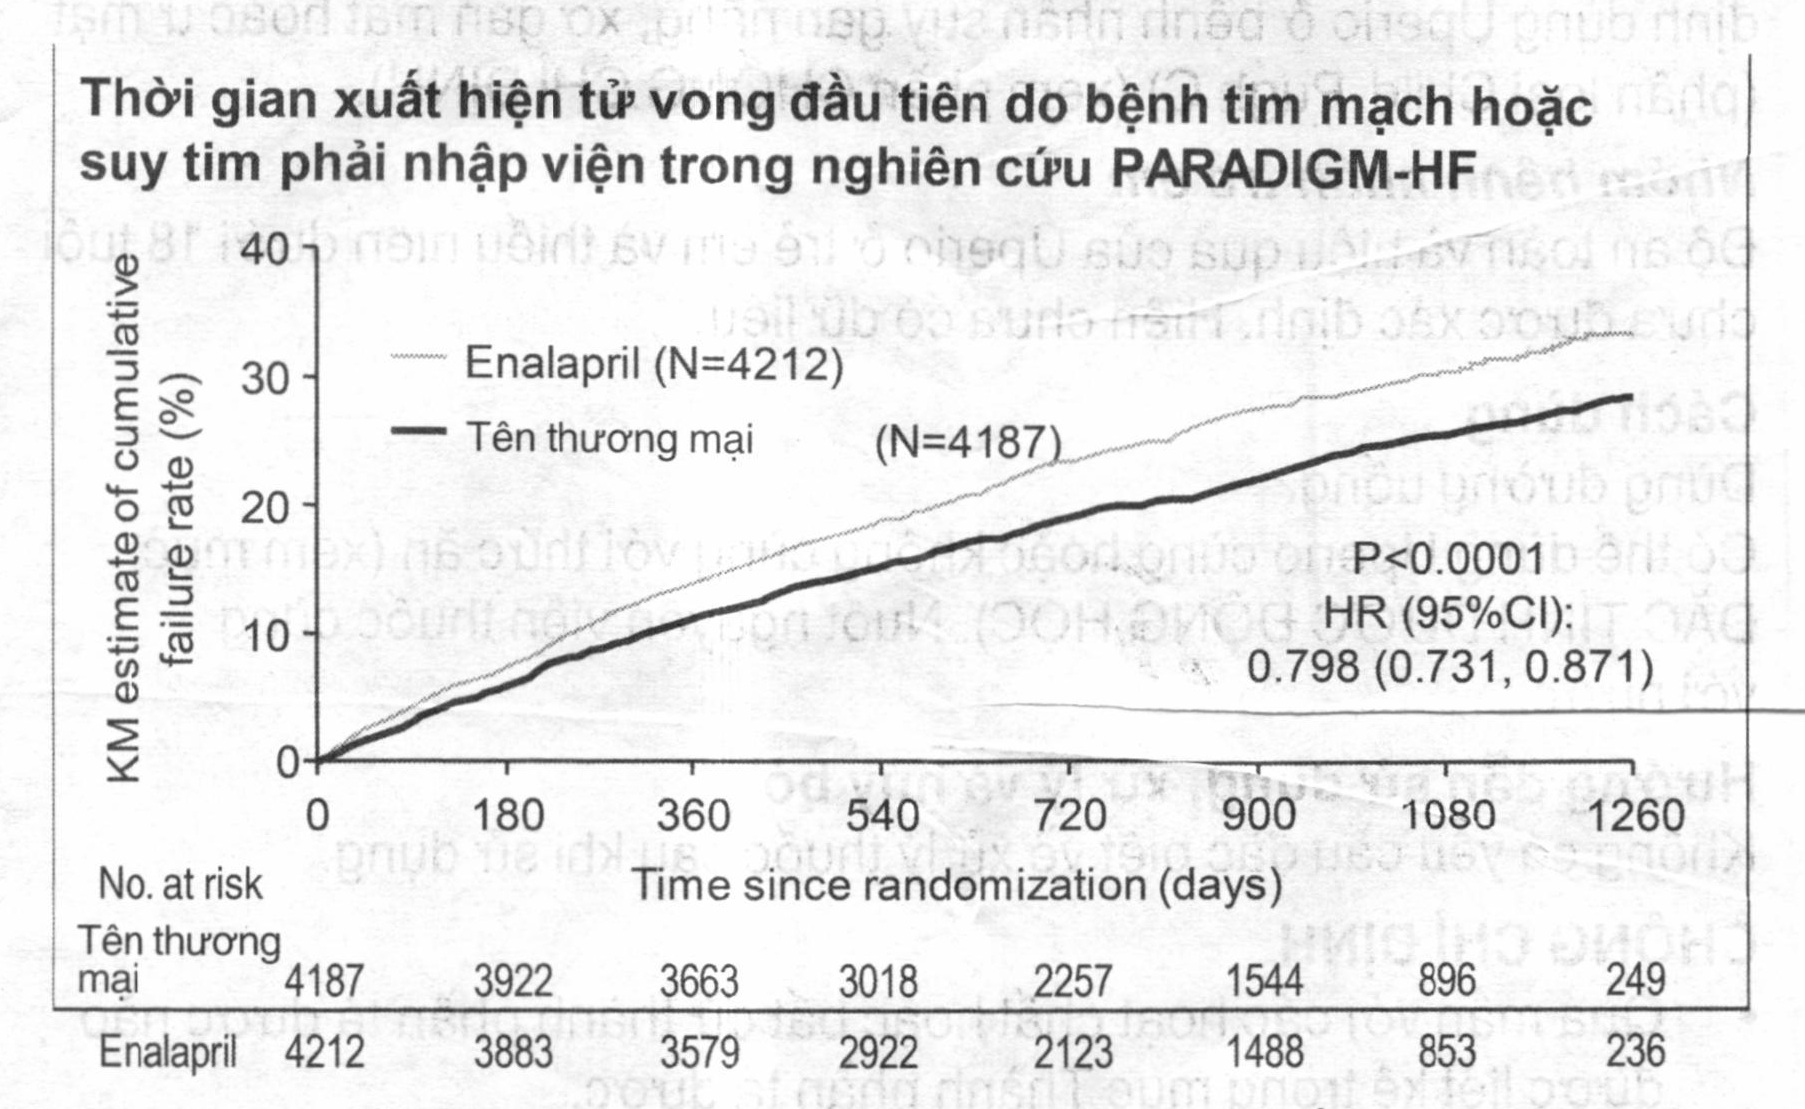 Thời gian xuất hiện tử vong đầu tiên do bệnh tim mạch hoặc suy tim phải nhập viện trong nghiên cứu PARADIGM-HF